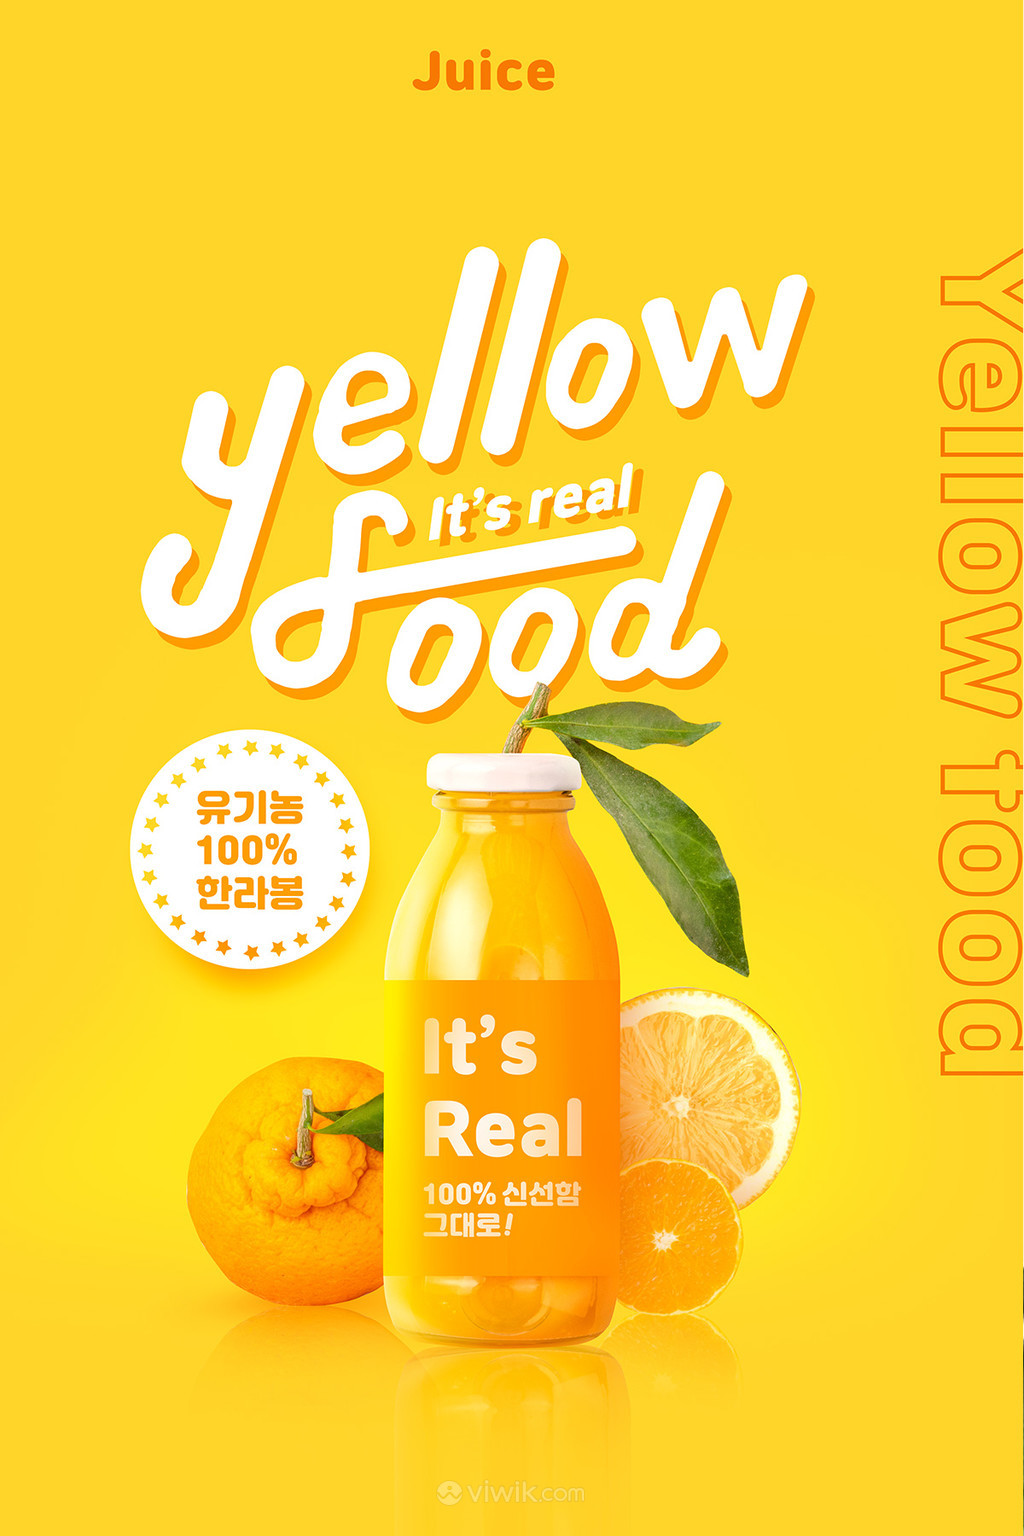 新鲜可口丑橘橙汁果汁饮料海报素材